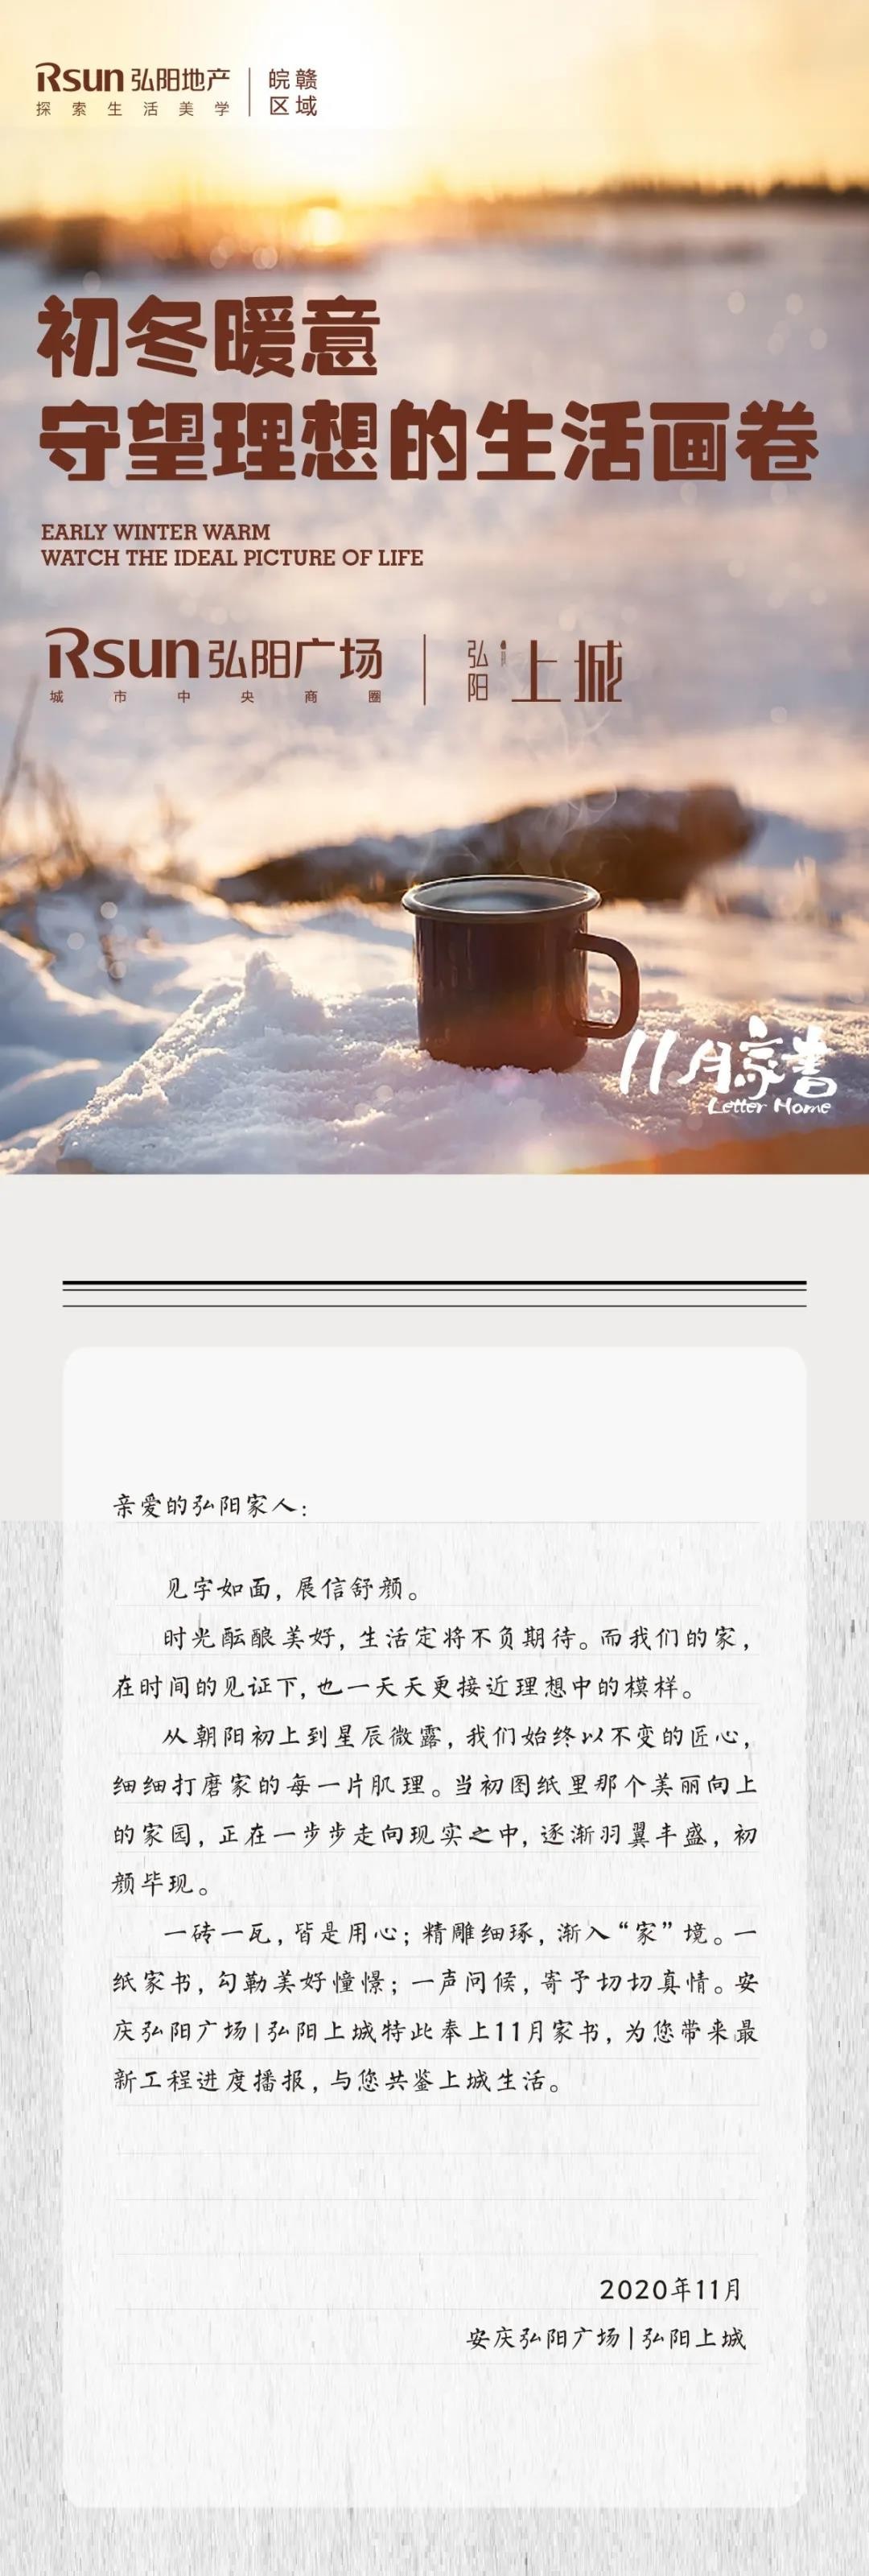 弘阳广场丨弘阳上城 11月工程进度 | 初冬暖意，守望理想的生活画卷